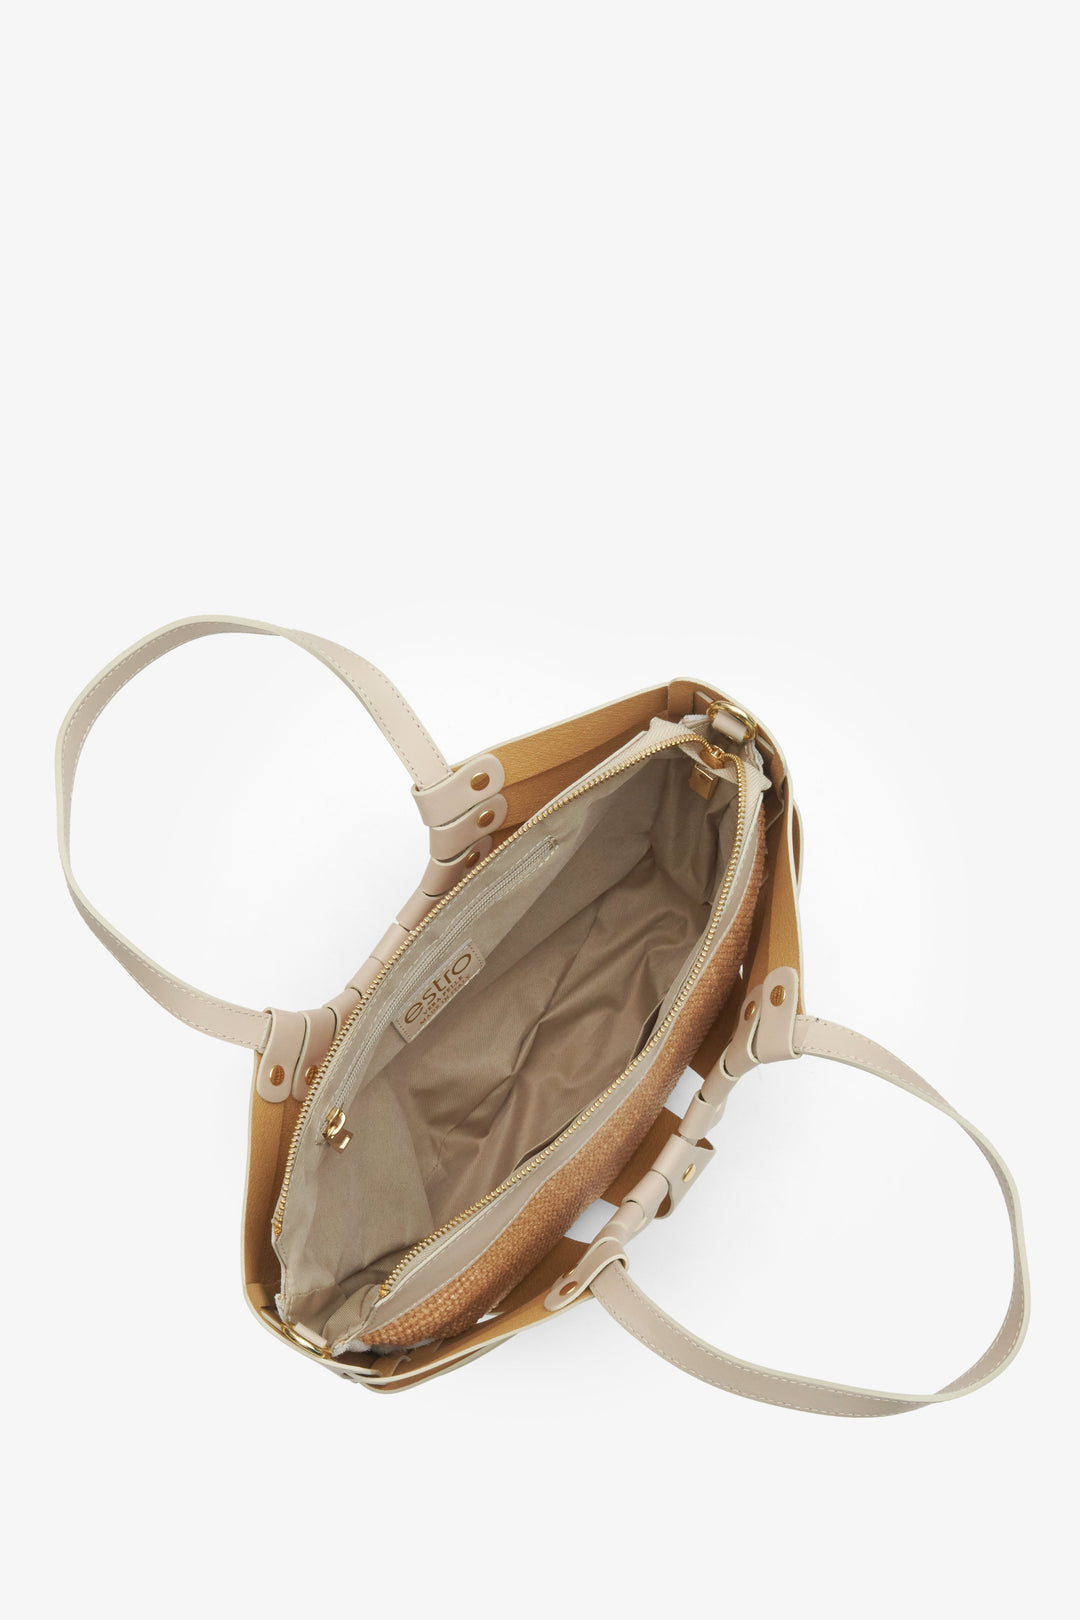 Beżowa skórzana torebka damska typu koszyk marki Estro - prezentacja wnętrza modelu.